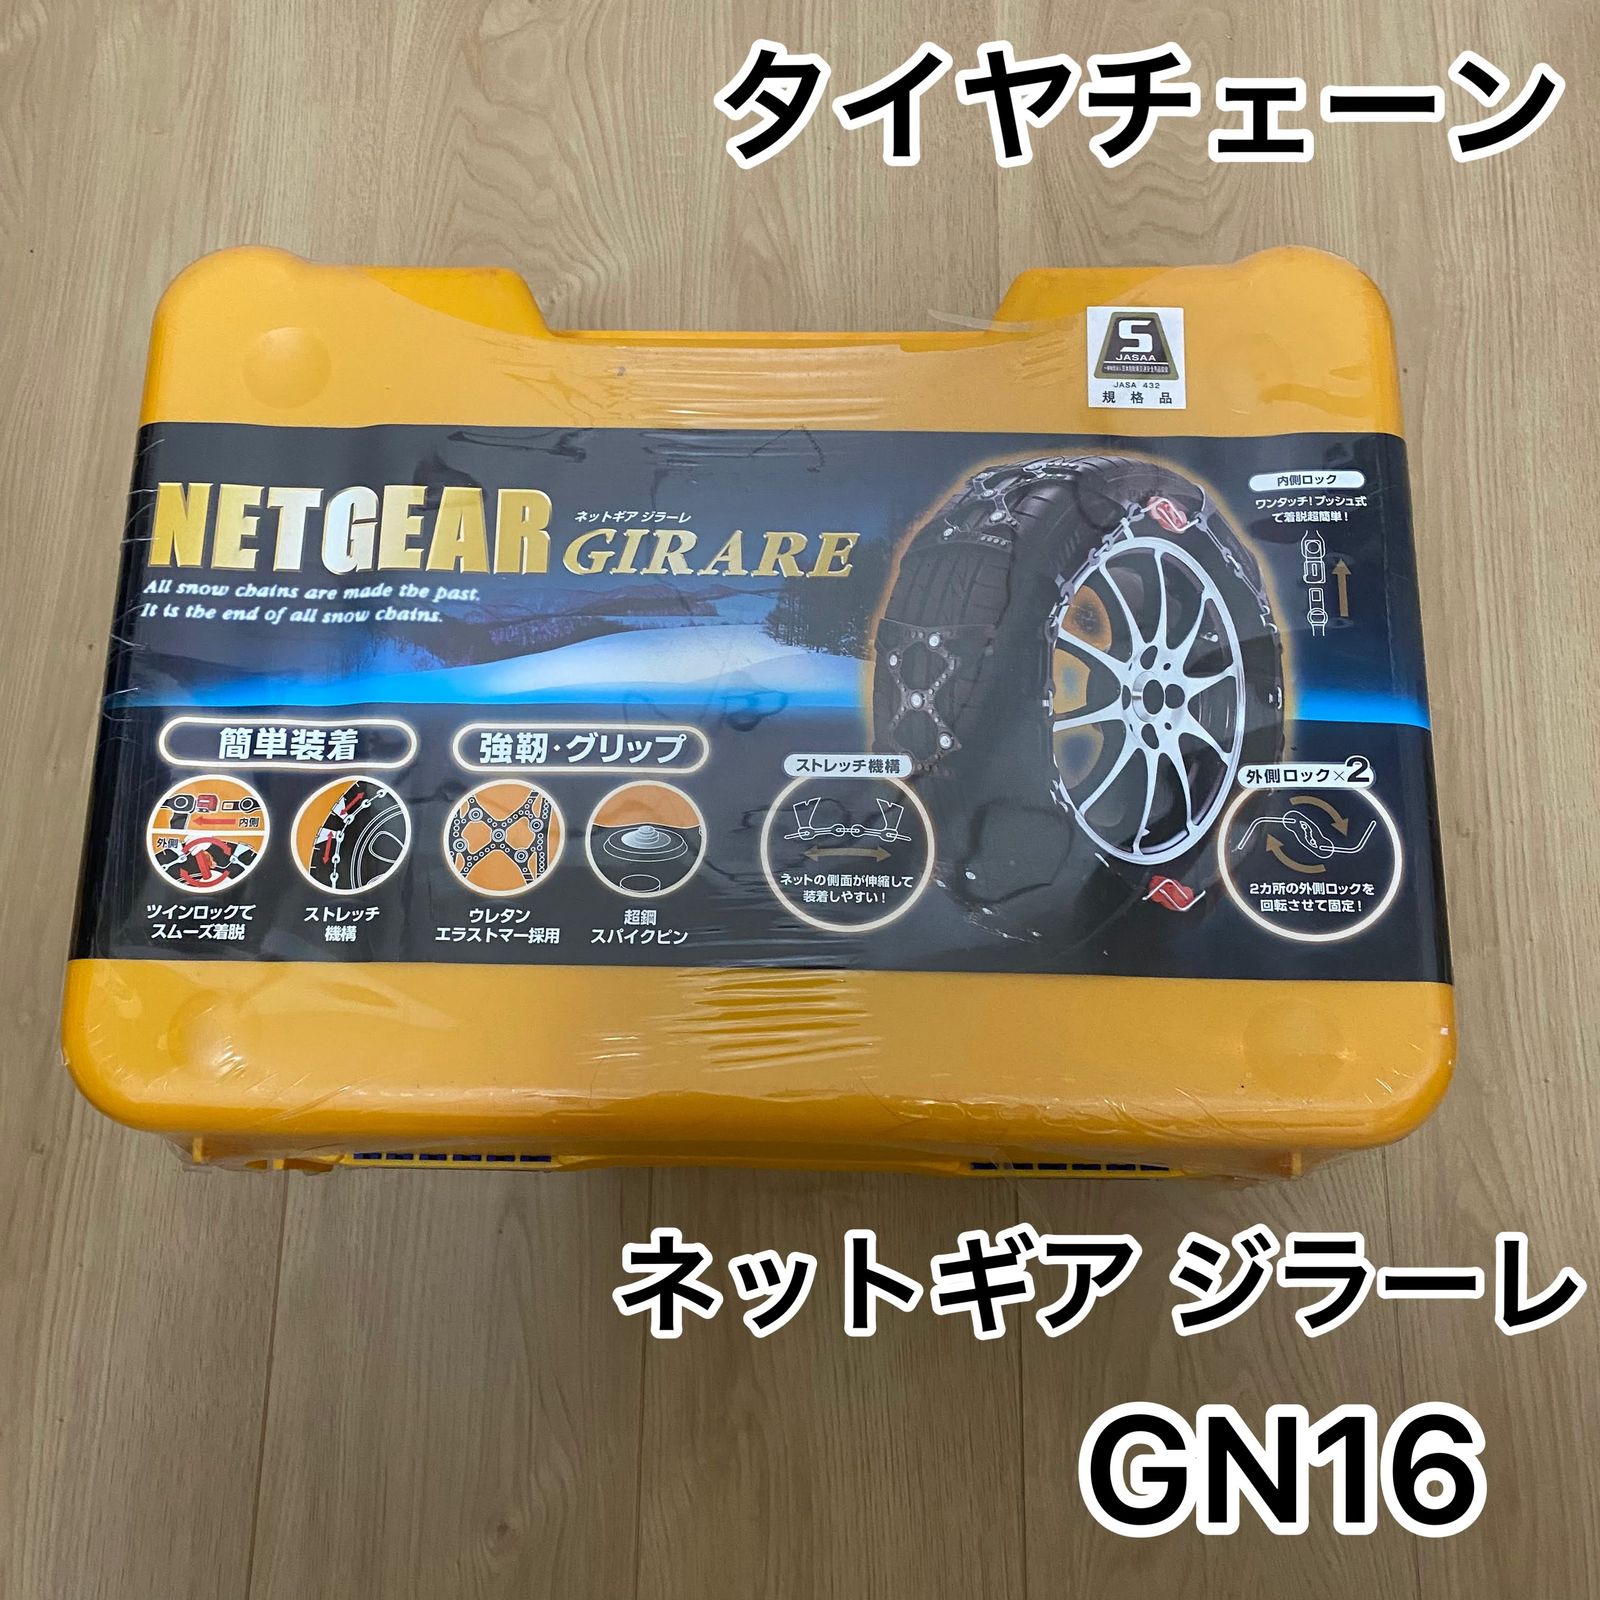 NETGEAR GIRARE ネットギア GN16 ラバーチェーン